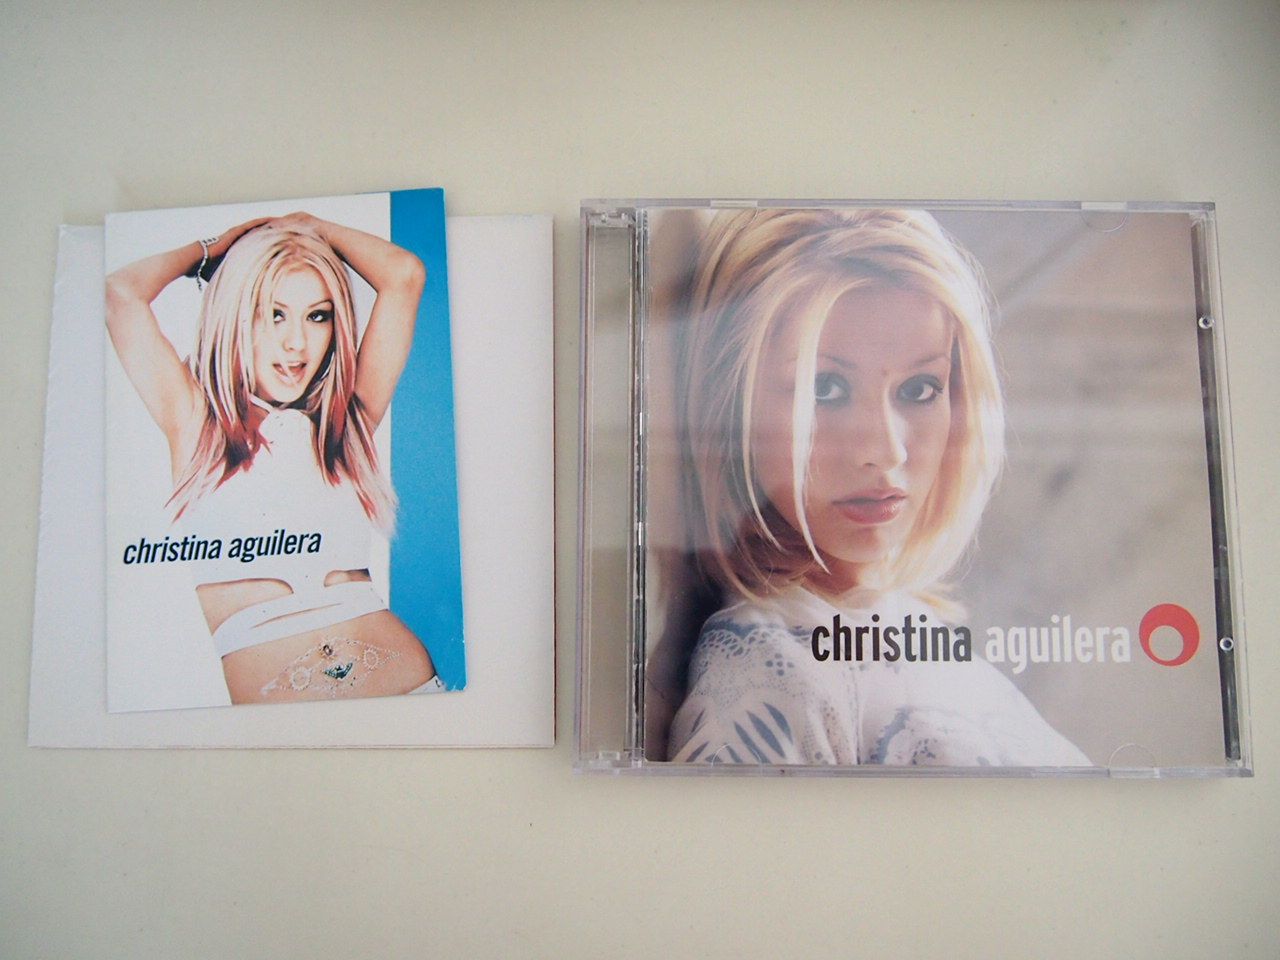 Christina Aguilera - Christina Aguilera (Special Edition)